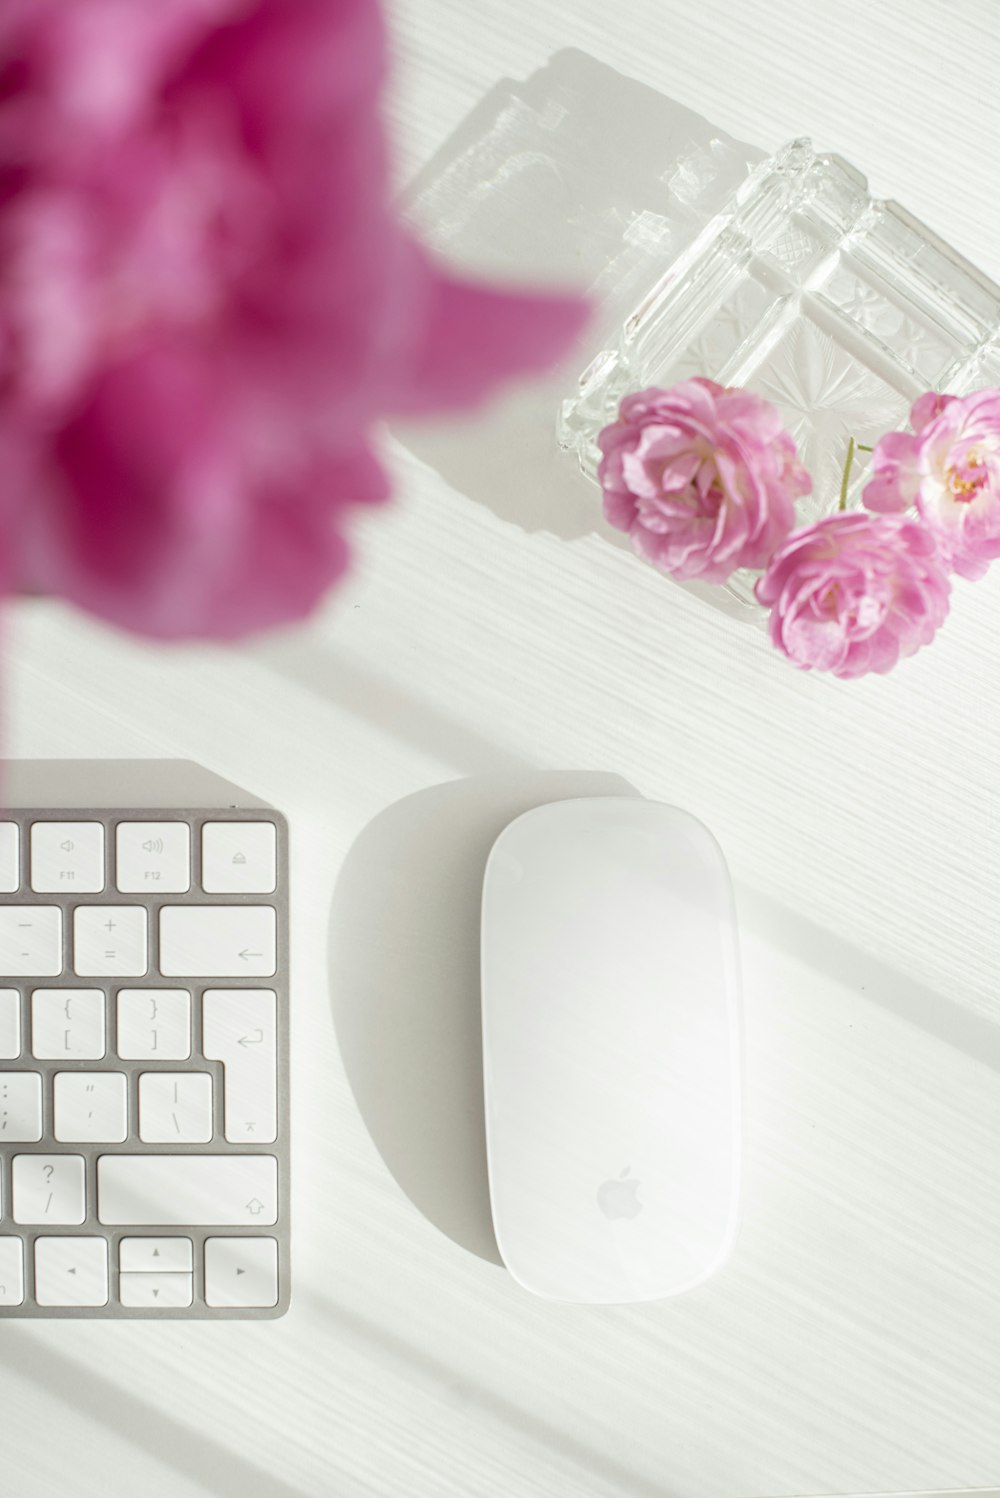 흰색 사과 매직 마우스는 흰색 나무 테이블에 분홍색 꽃 옆에 있다